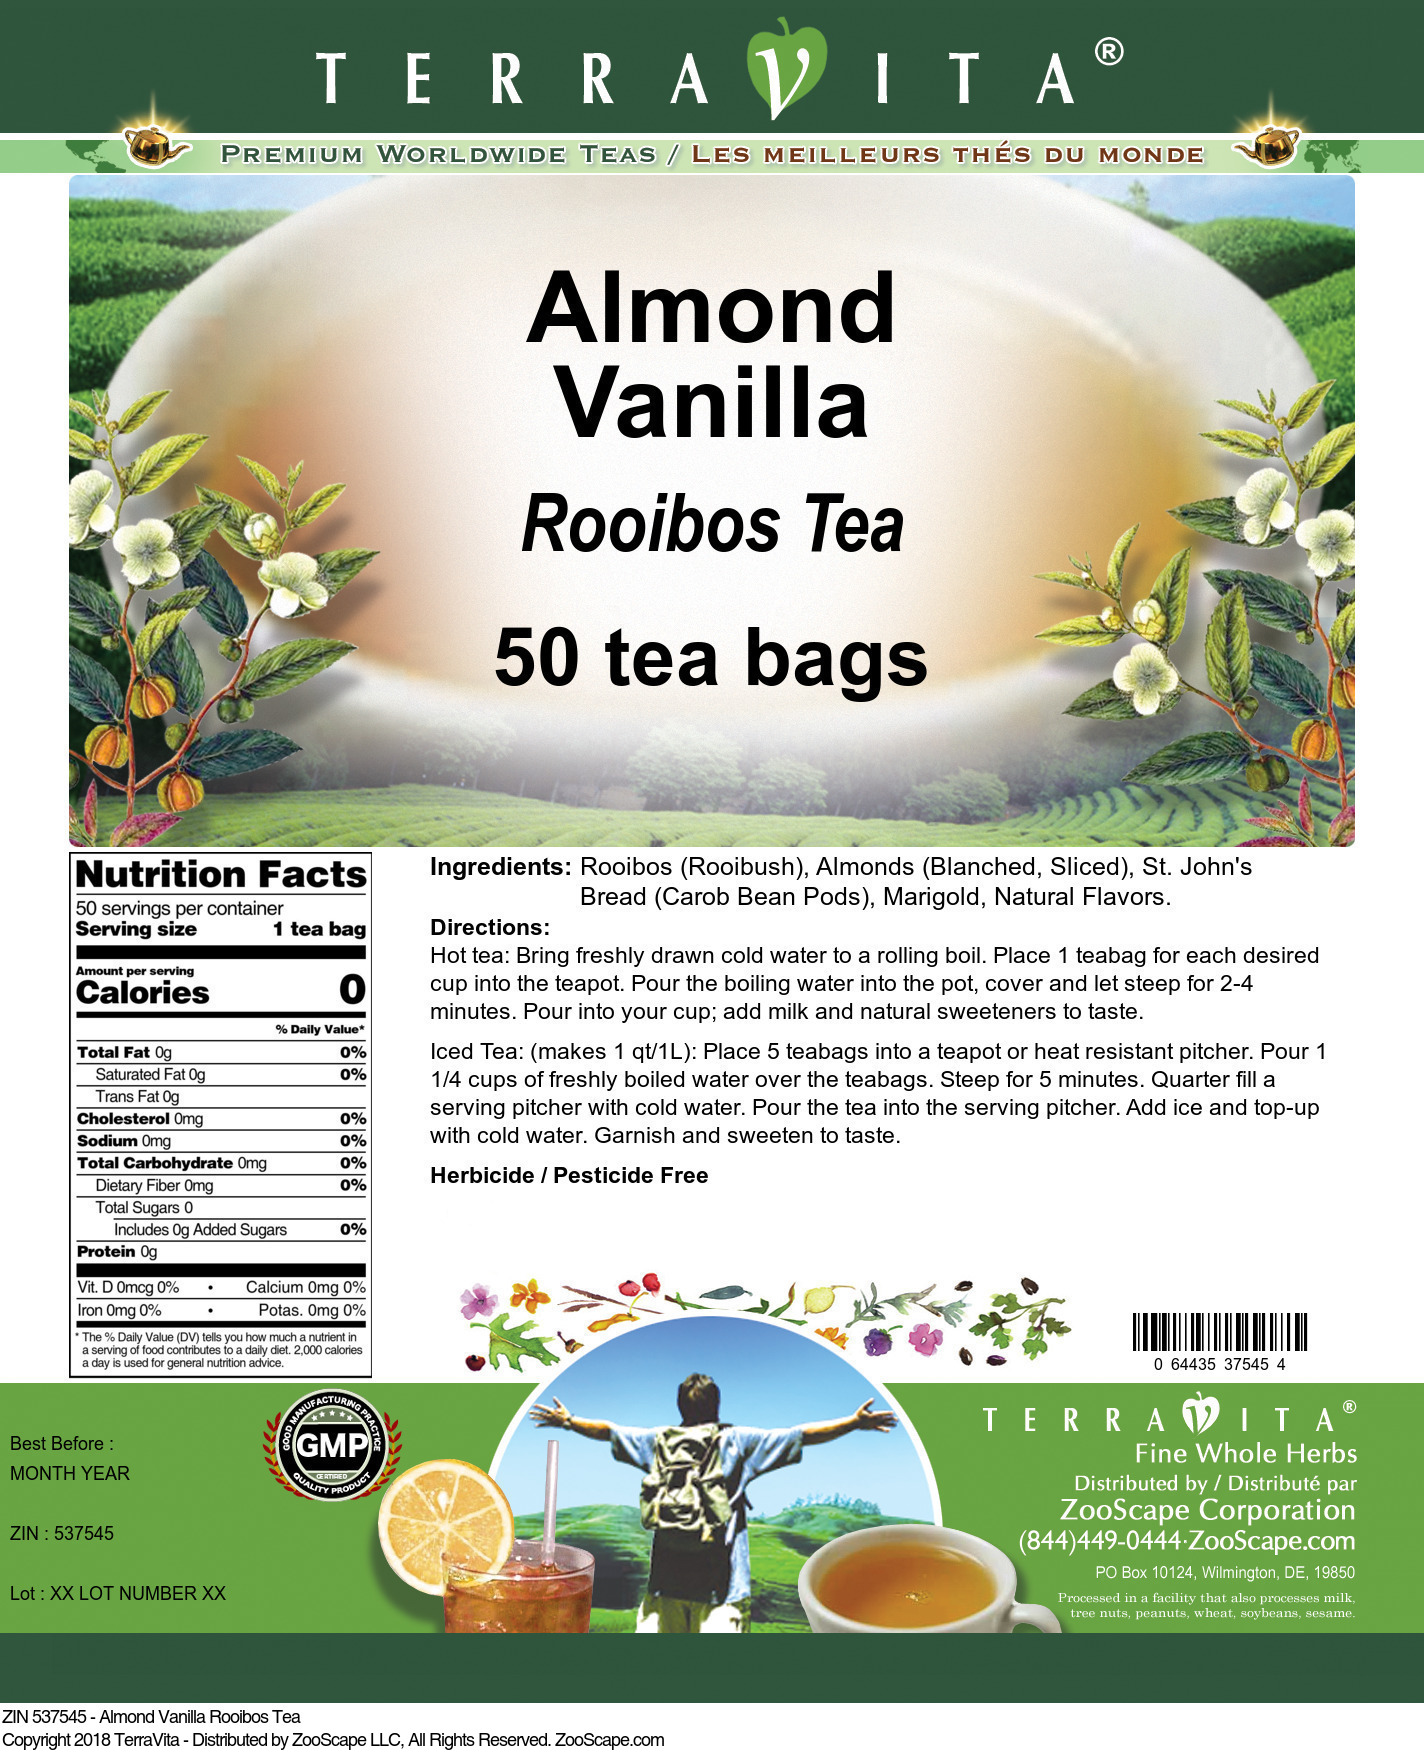 Almond Vanilla Rooibos Tea - Label